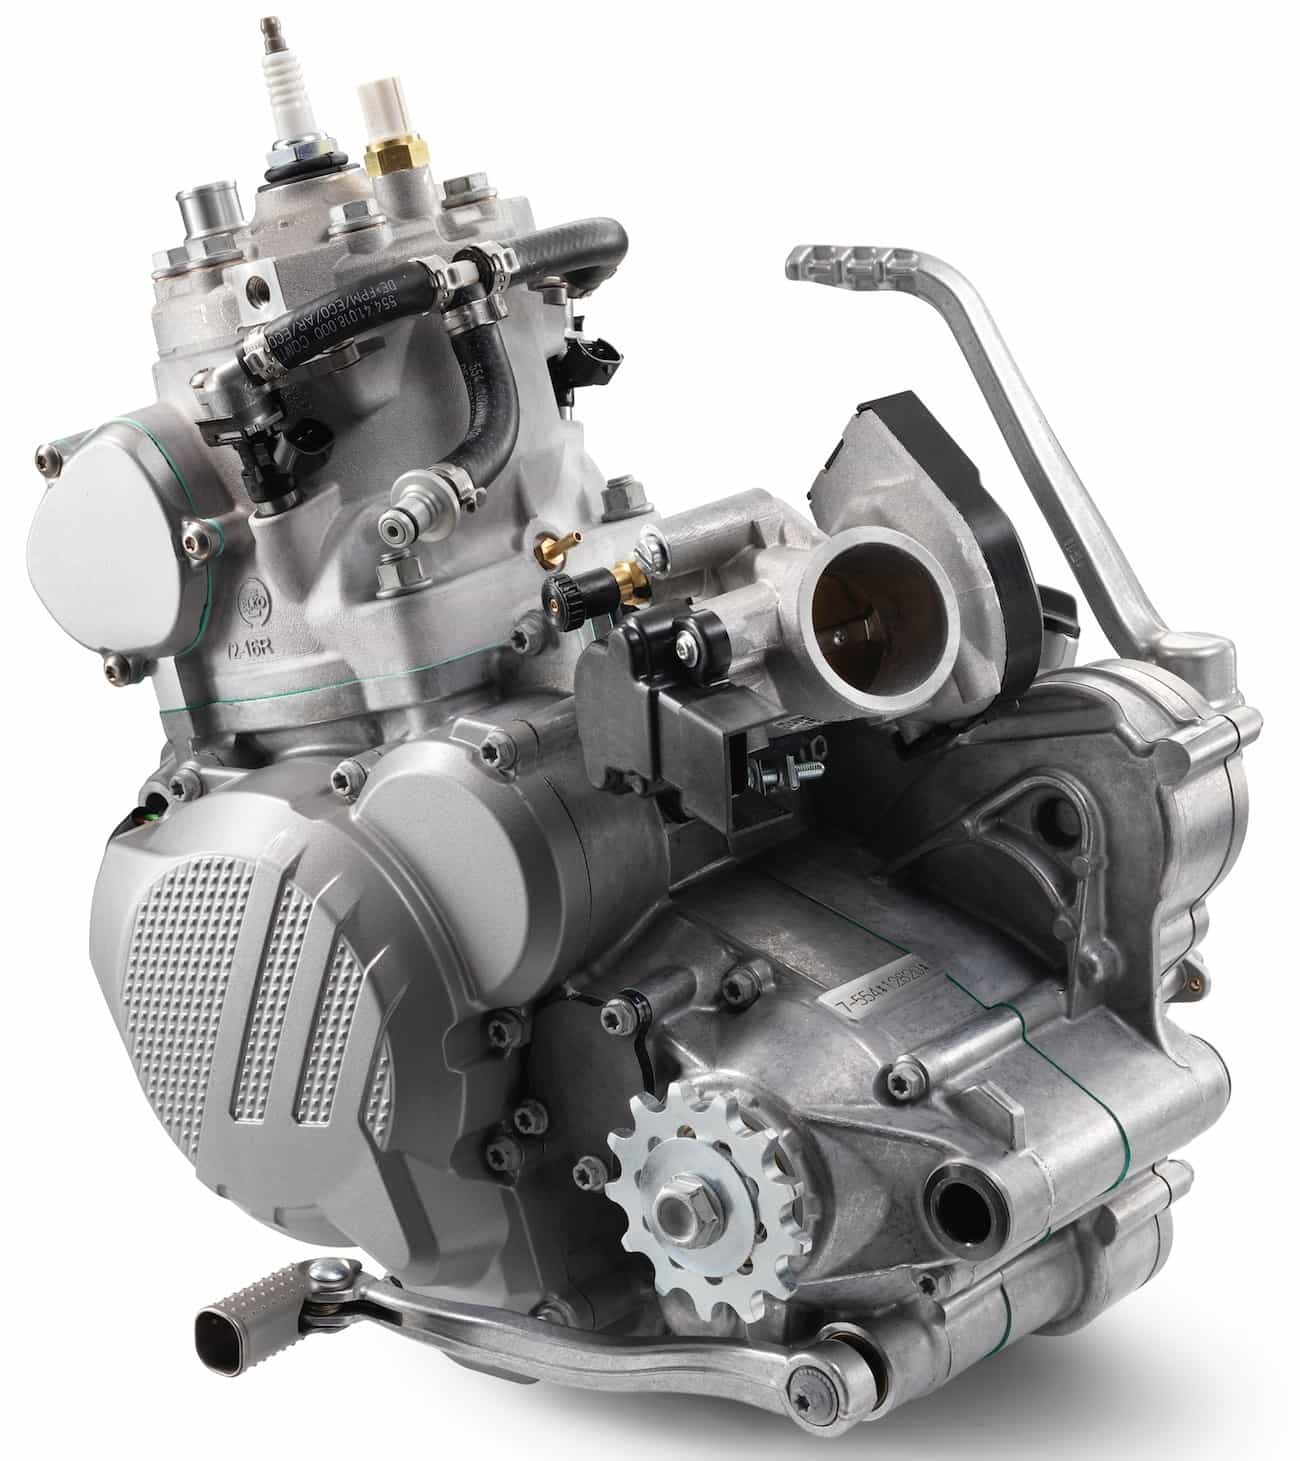 176957_KTM XC-W TPI Engine MY 2018 studio